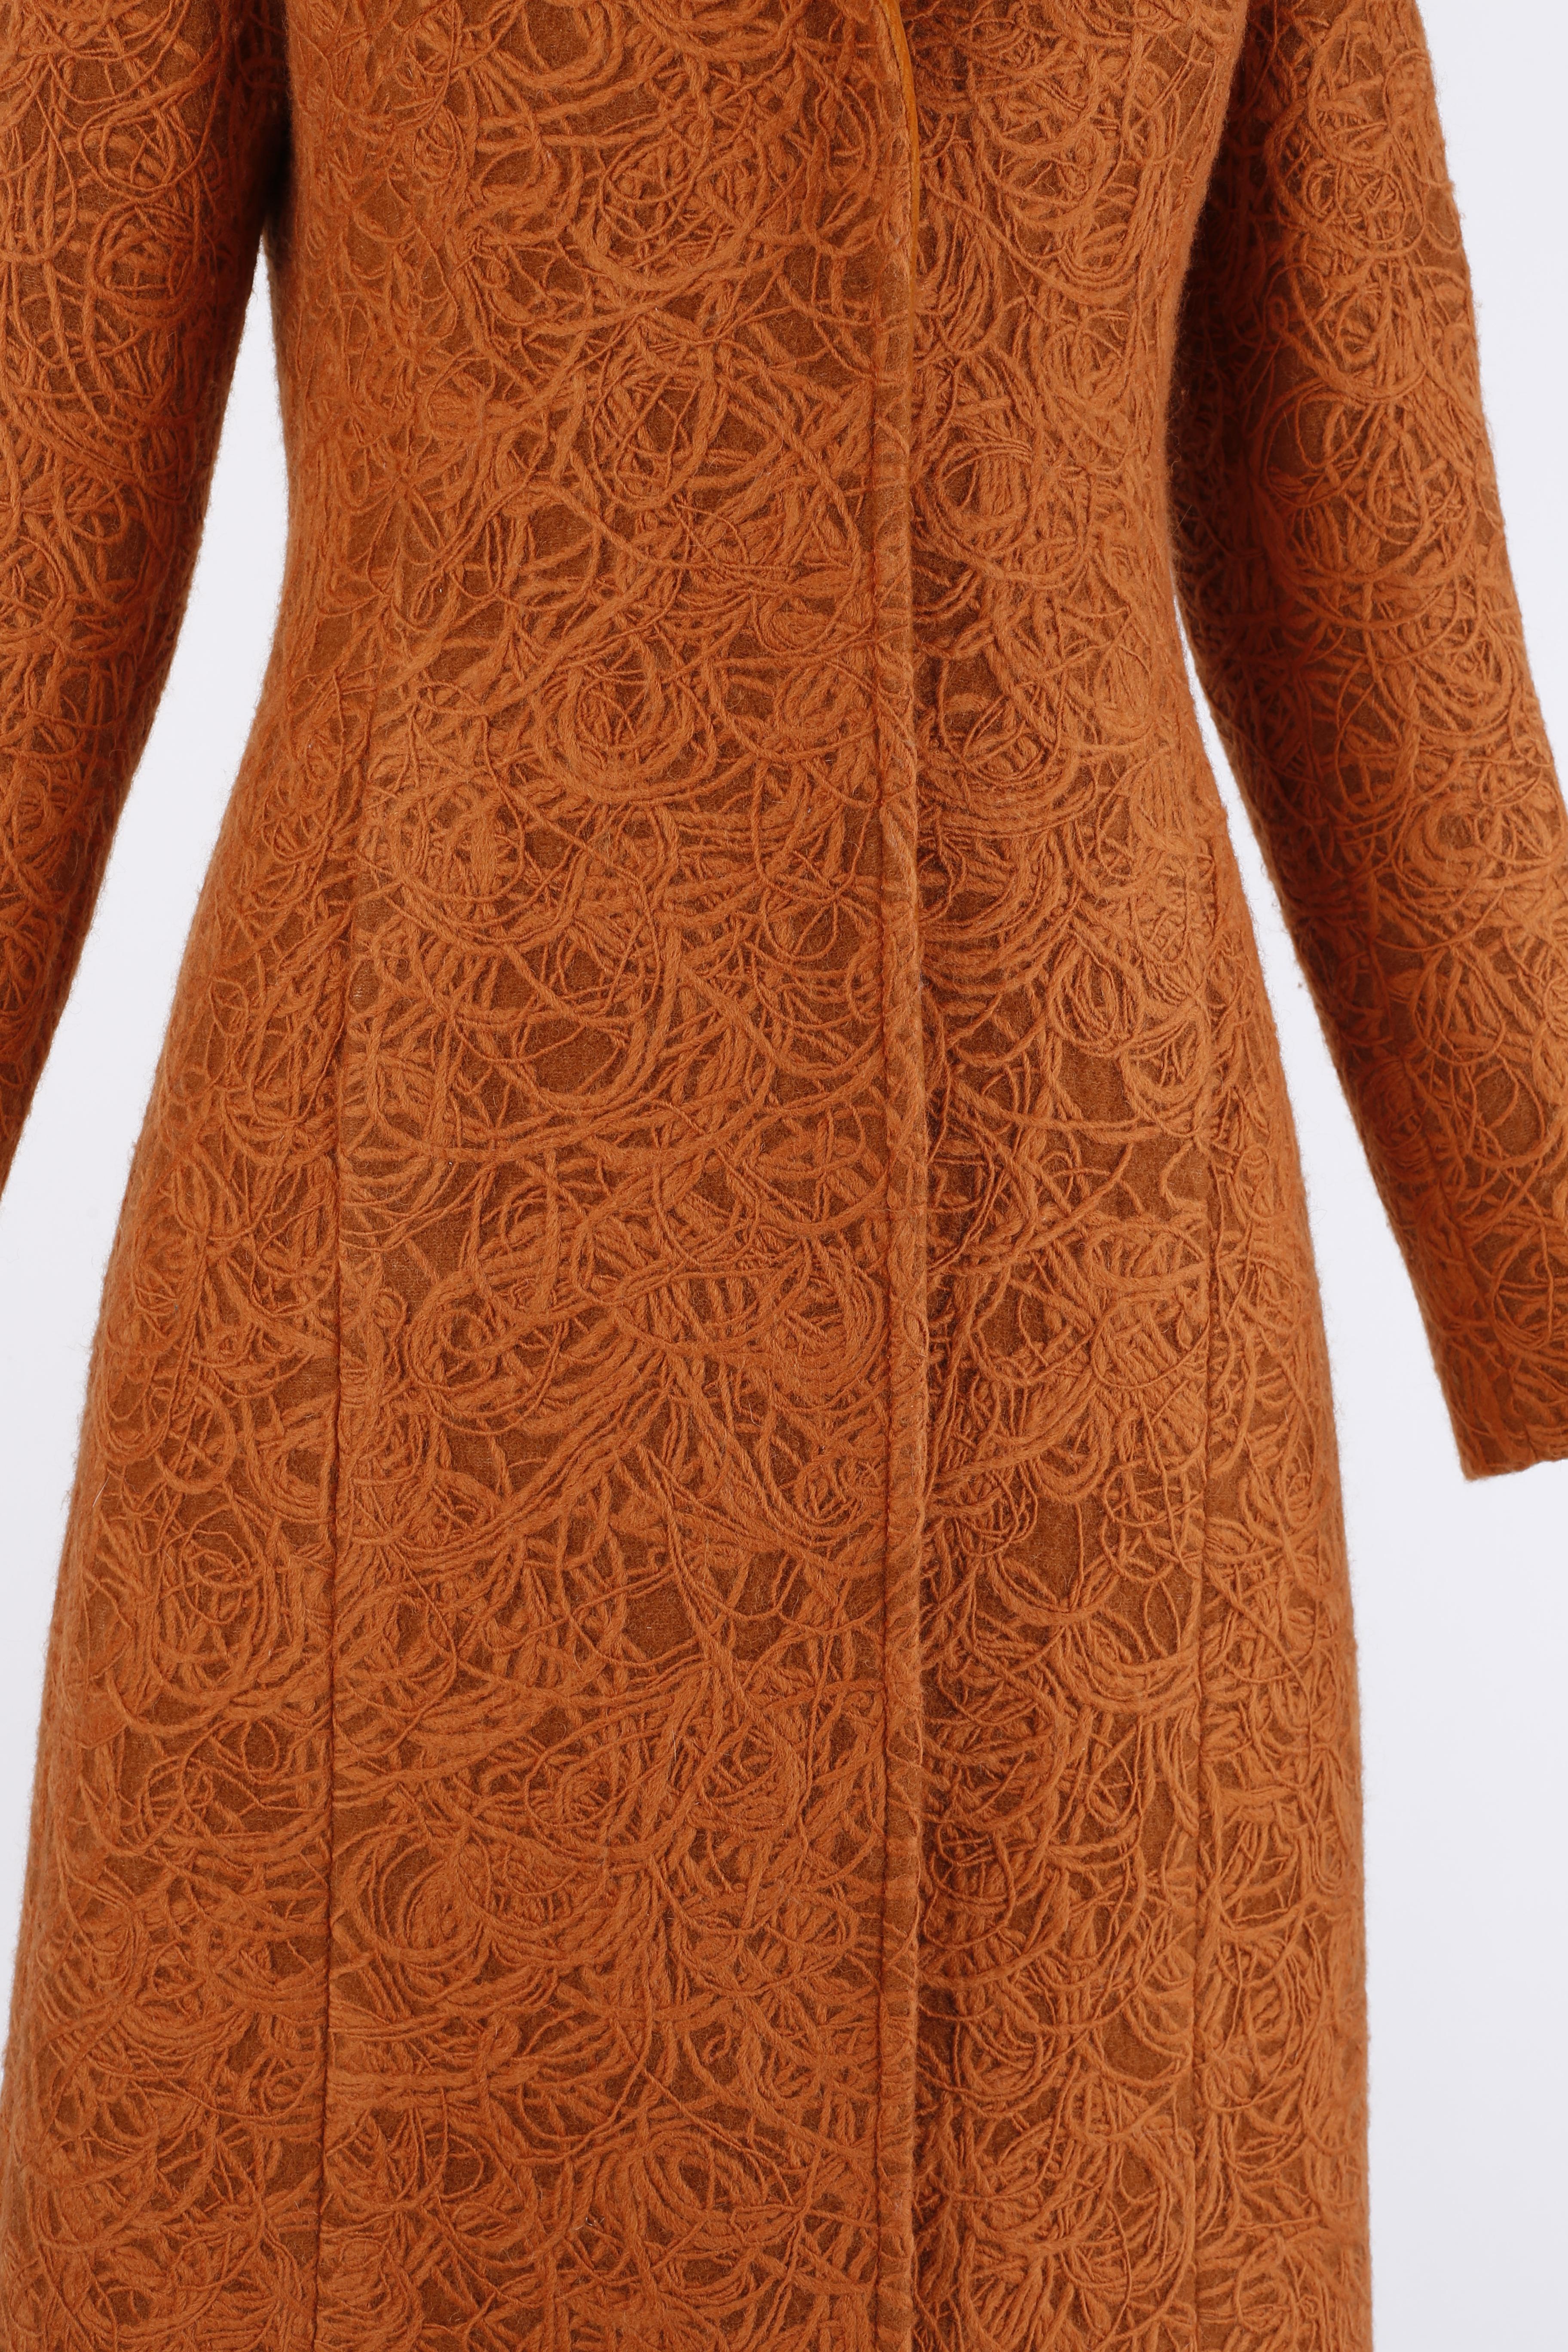 Alexander McQueen c.1996 Rust Orange Textured Wool Tailored Dress Jacket Coat  For Sale 3